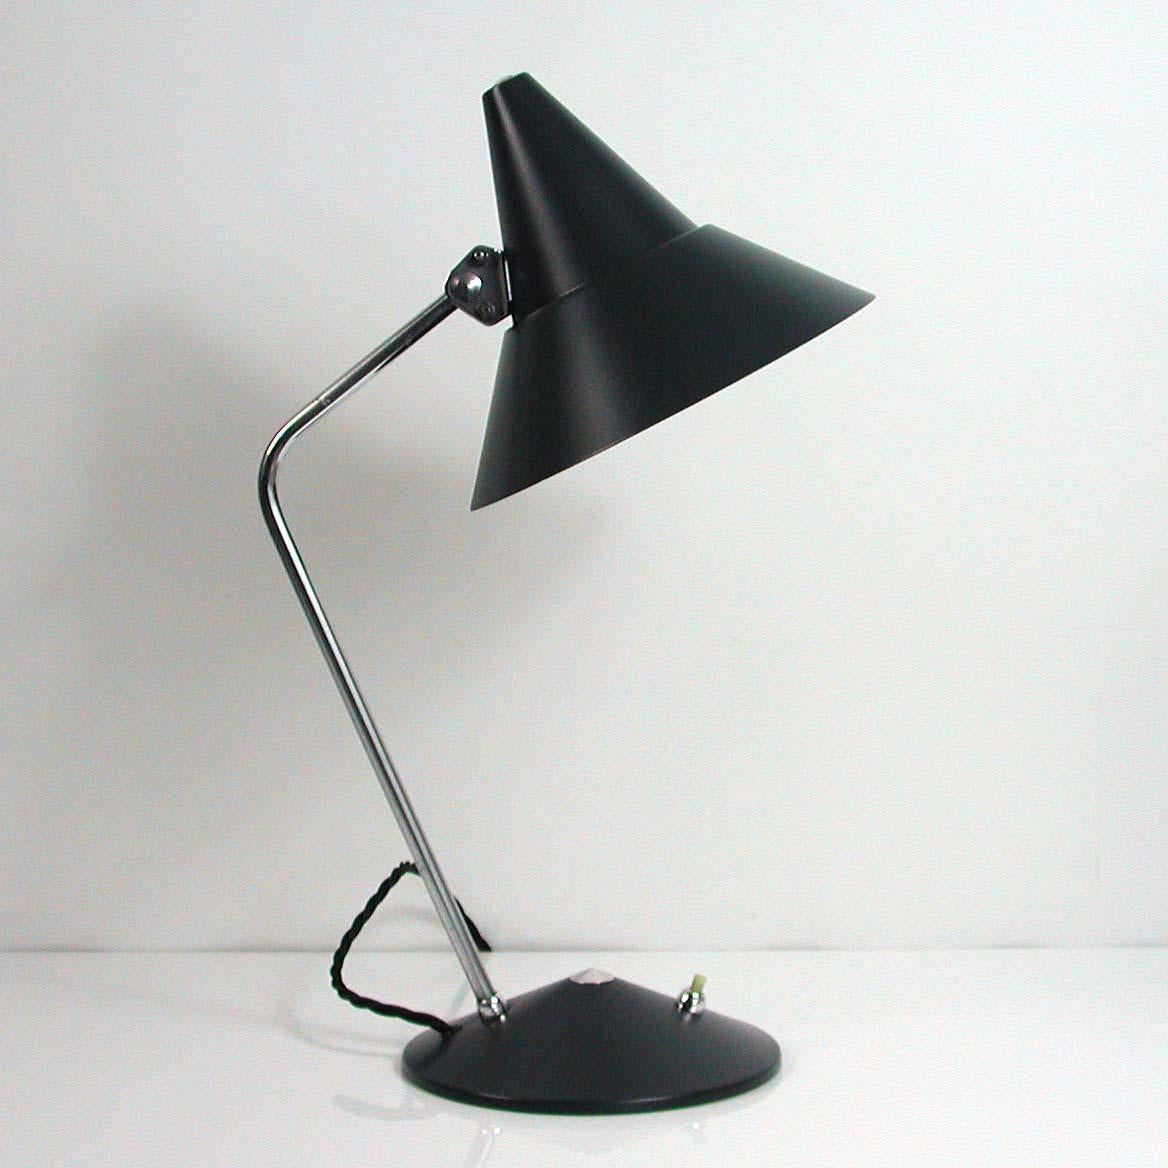 Diese Schreibtischlampe wurde in den 1950er Jahren von HELO Leuchten entworfen und hergestellt. Sie hat einen dunkelgrau lackierten Lampenschirm und Sockel aus Metall und einen verchromten Lampenarm mit verstellbarem Lampenschirm.

Die Lampe wurde